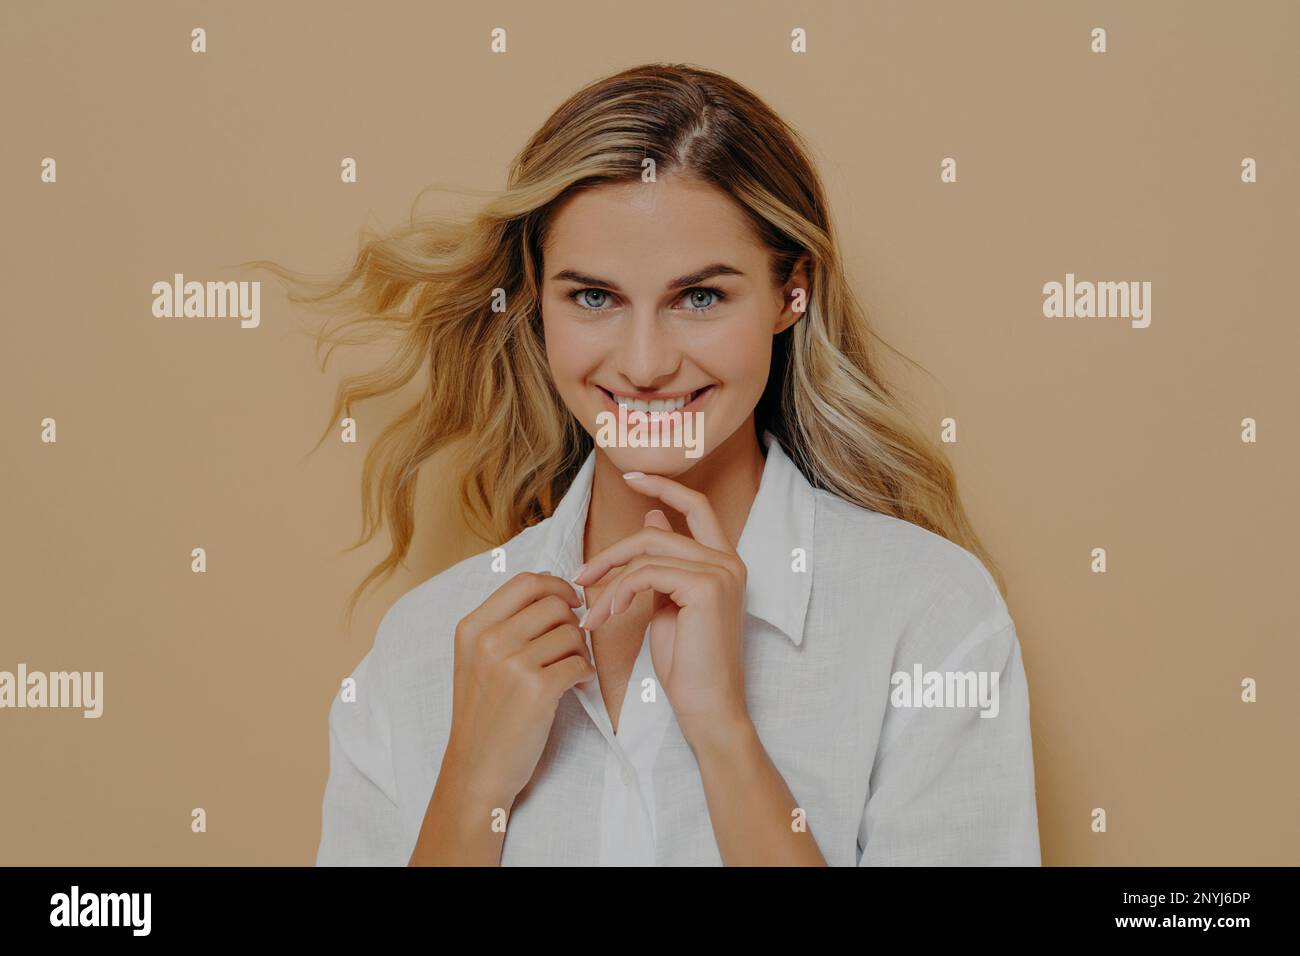 Gros plan portrait d'une femme blonde, romantique et féminine, qui regarde l'appareil photo avec un sourire éclatant, tenant les mains devant Banque D'Images